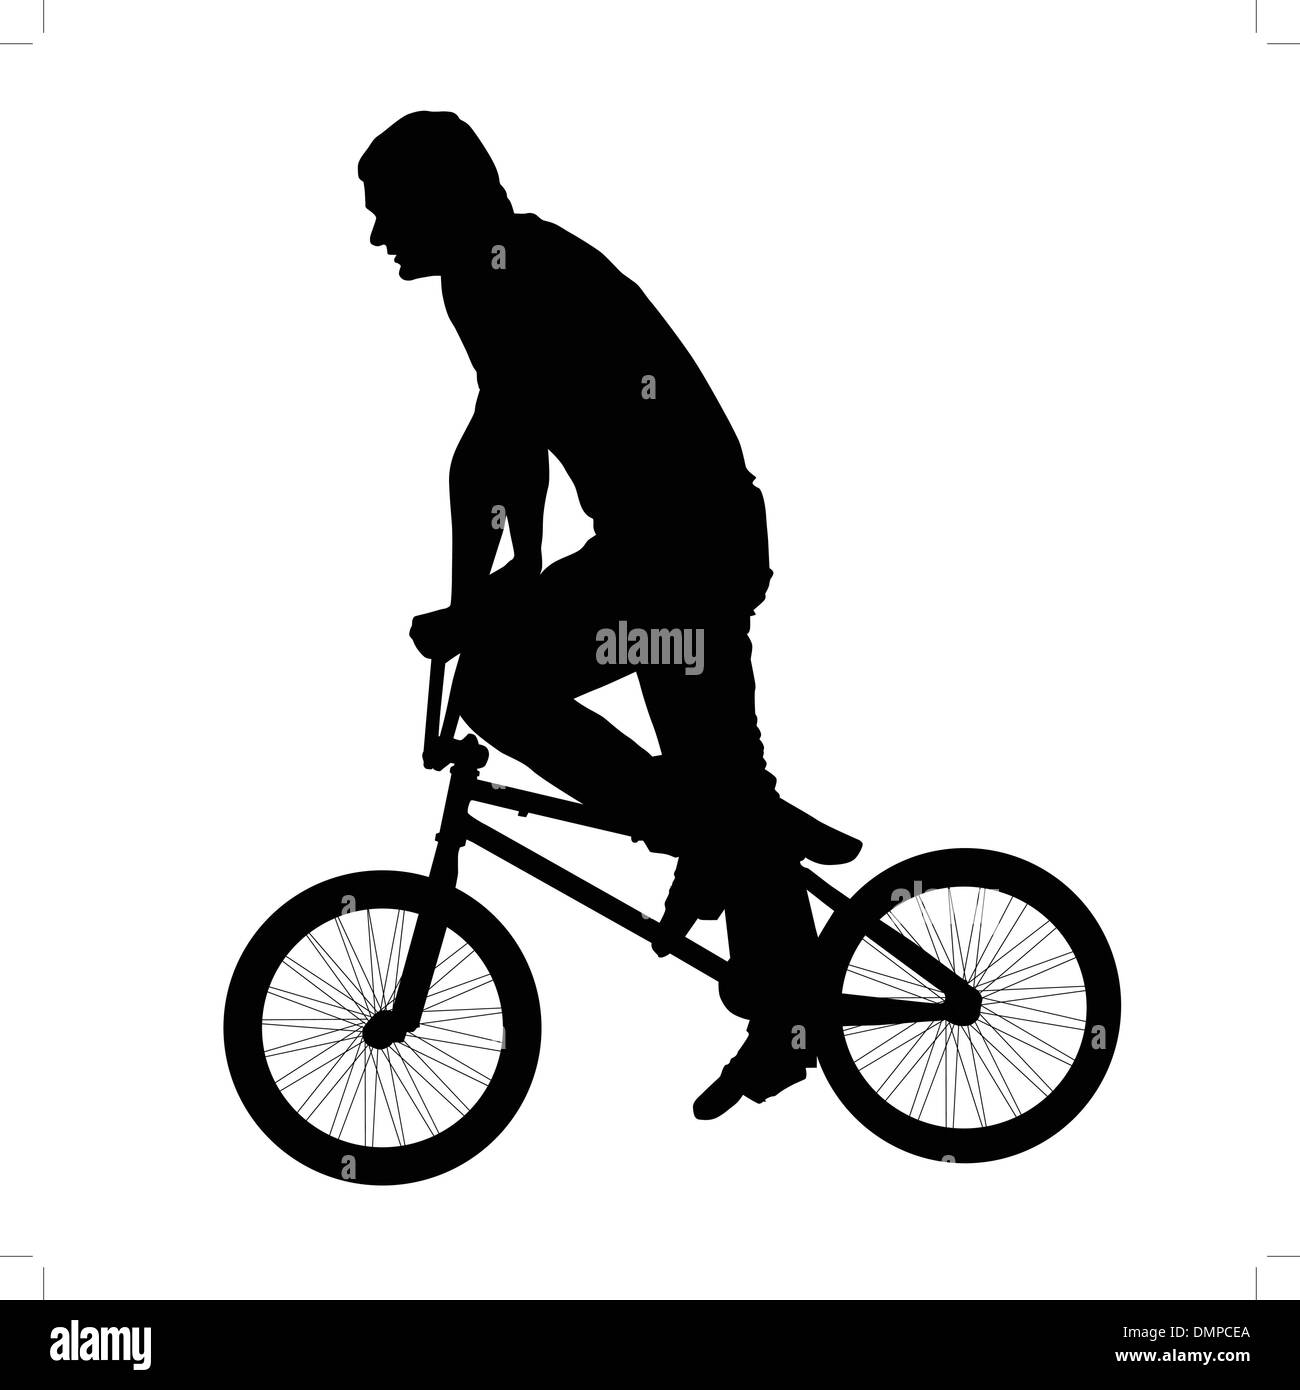 Schwarze Silhouette eines jungen Mannes auf dem Fahrrad Stock Vektor